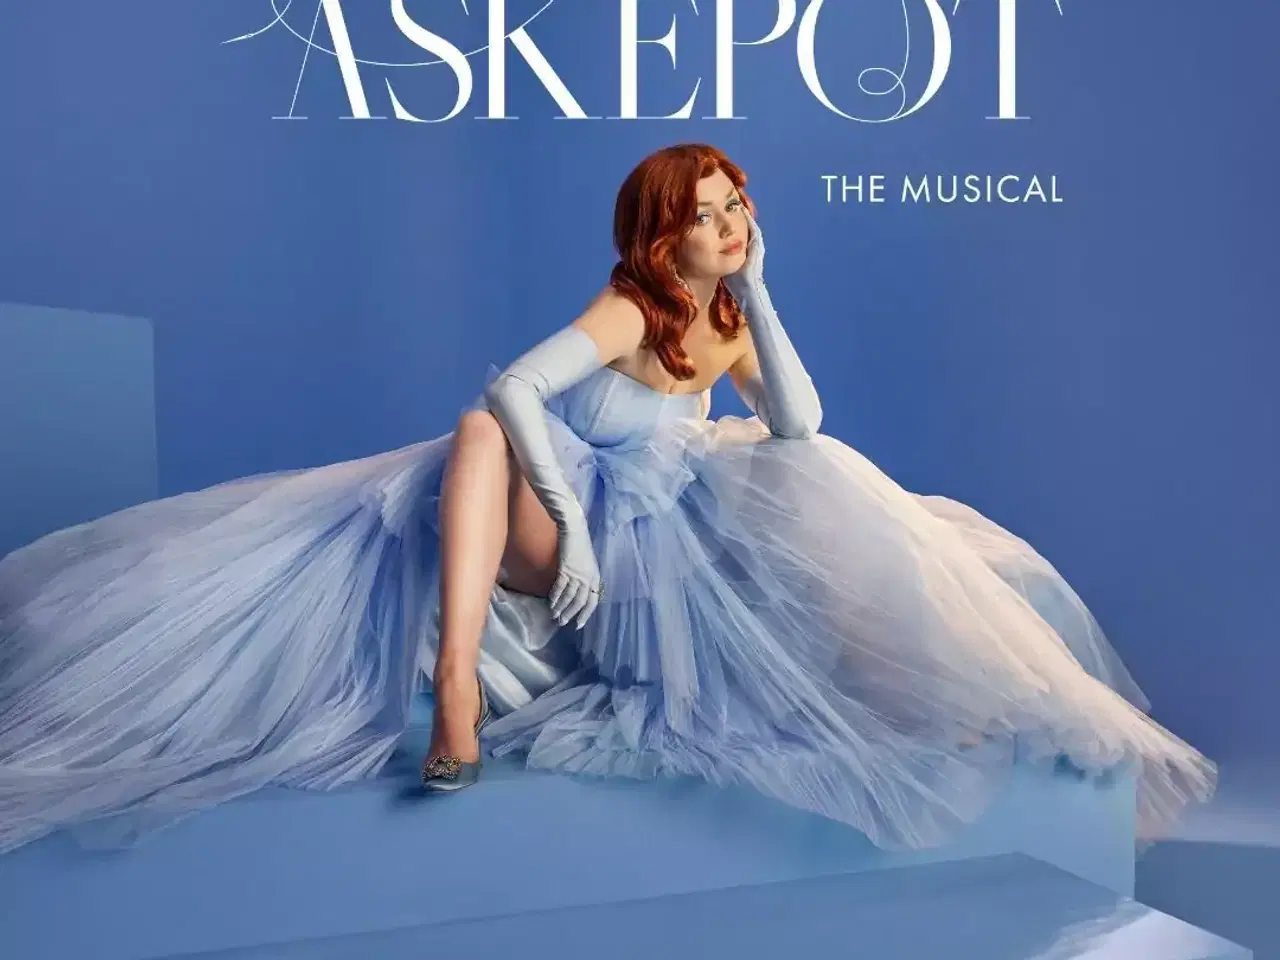 Billede 1 - 2 billetter til Askepot the Musical sælges